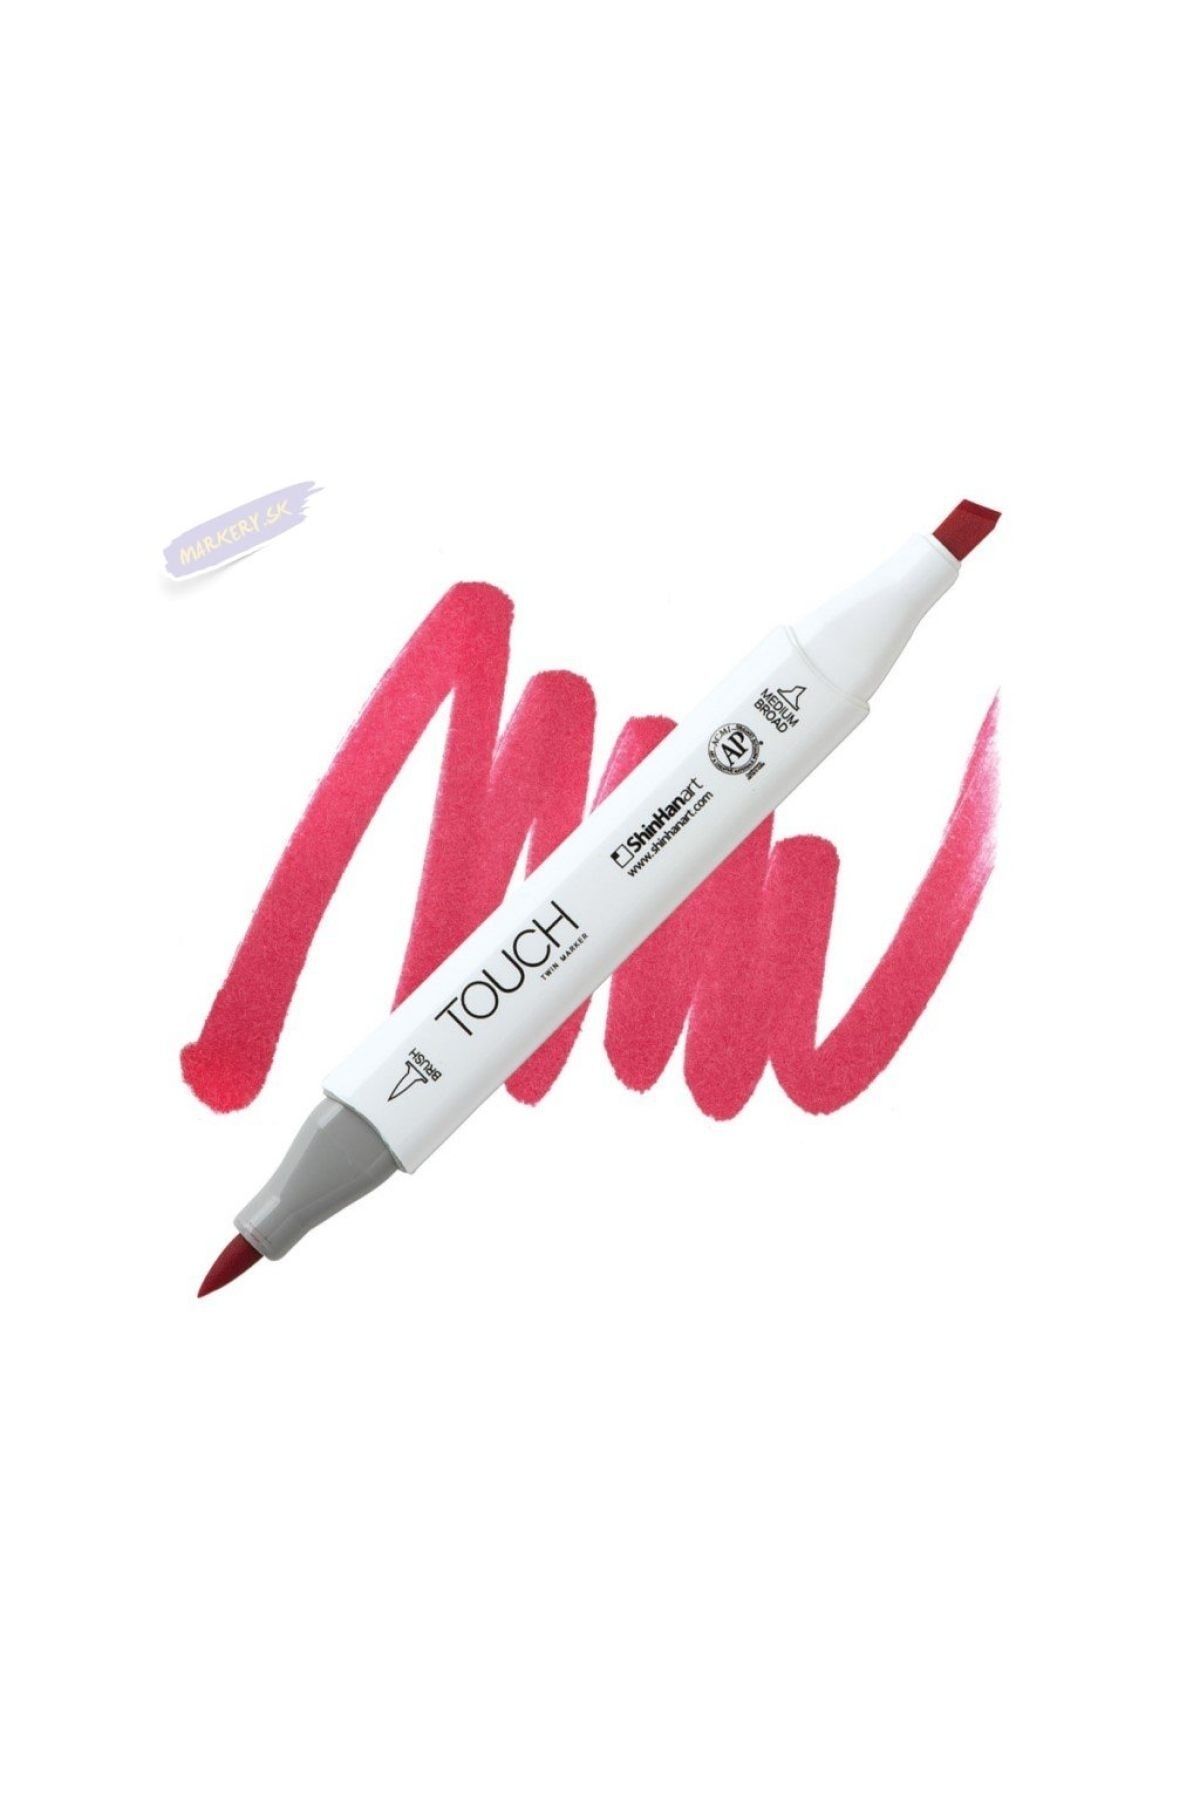 Shinhan Art Touch Twın Brush Pen : Çift Taraflı Marker : R15 Geranium